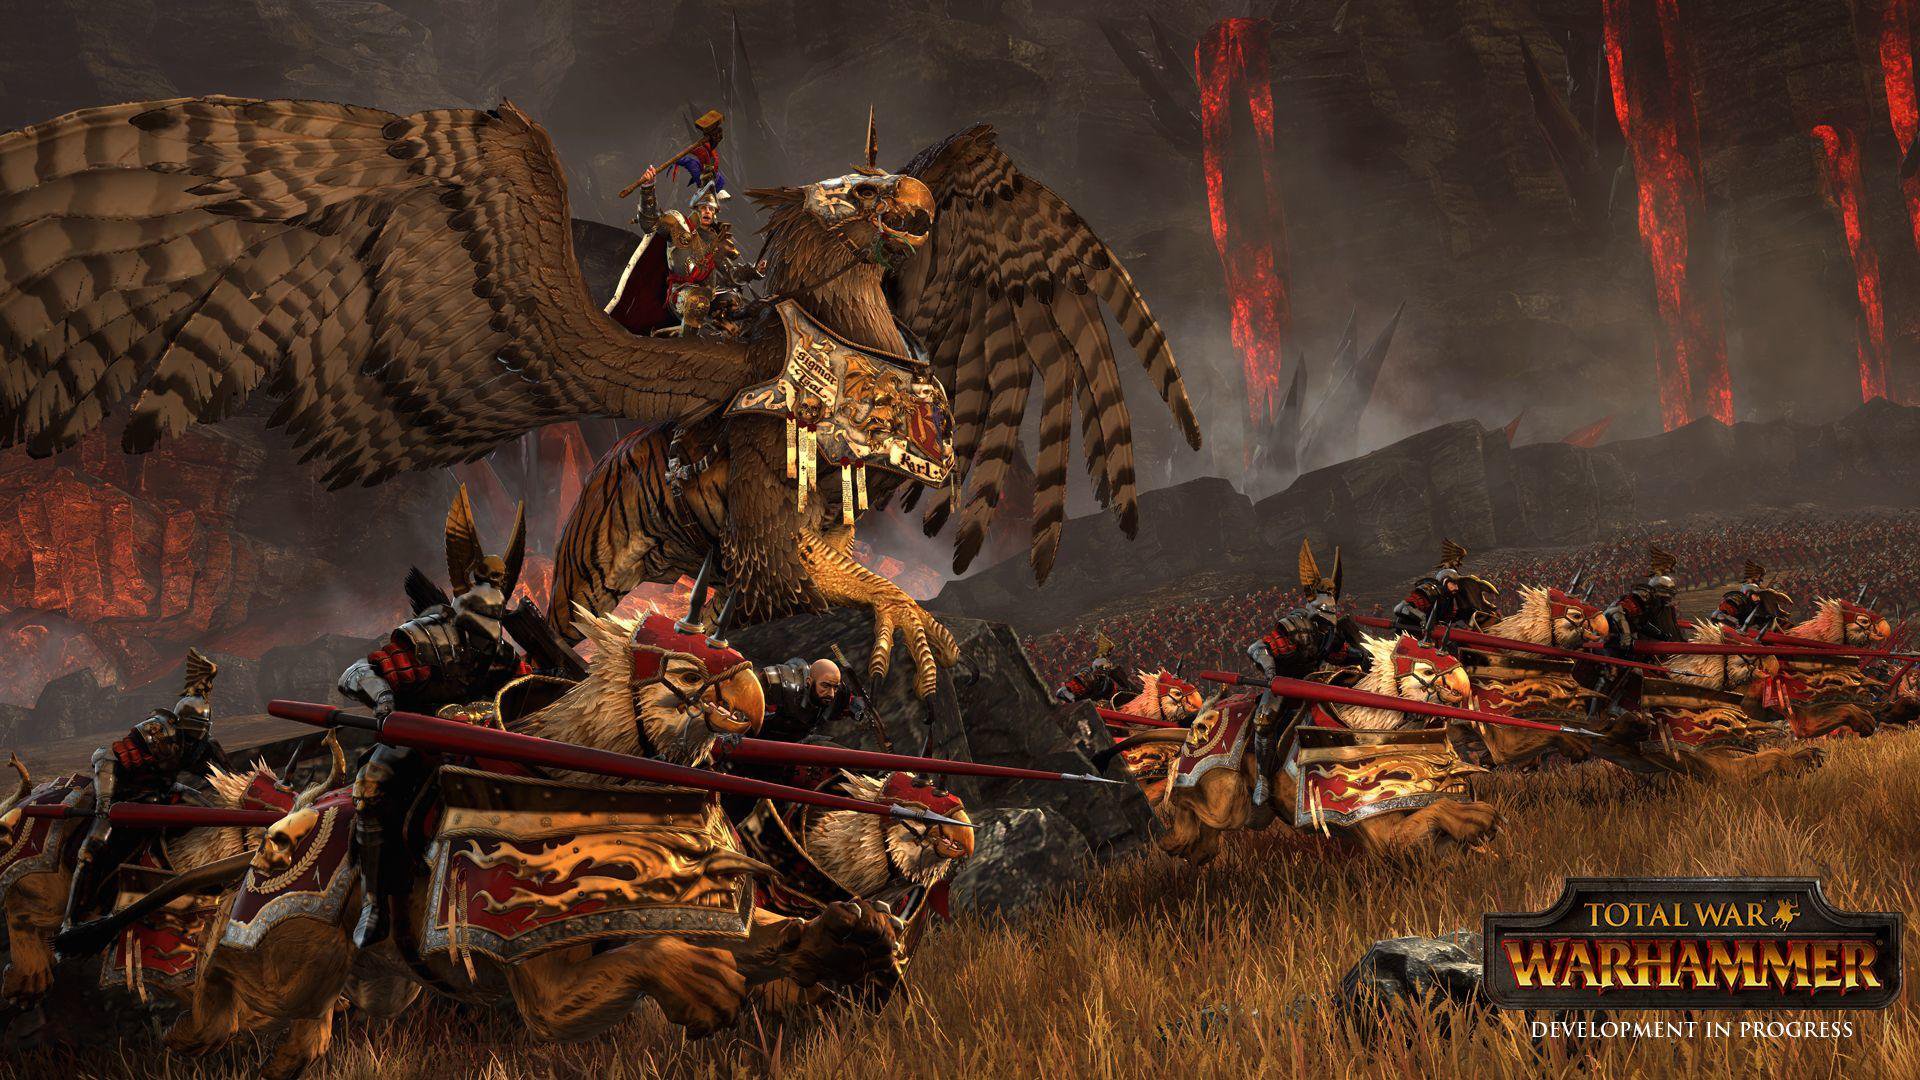 Total War: Warhammer (Savage Edition)[Steam]